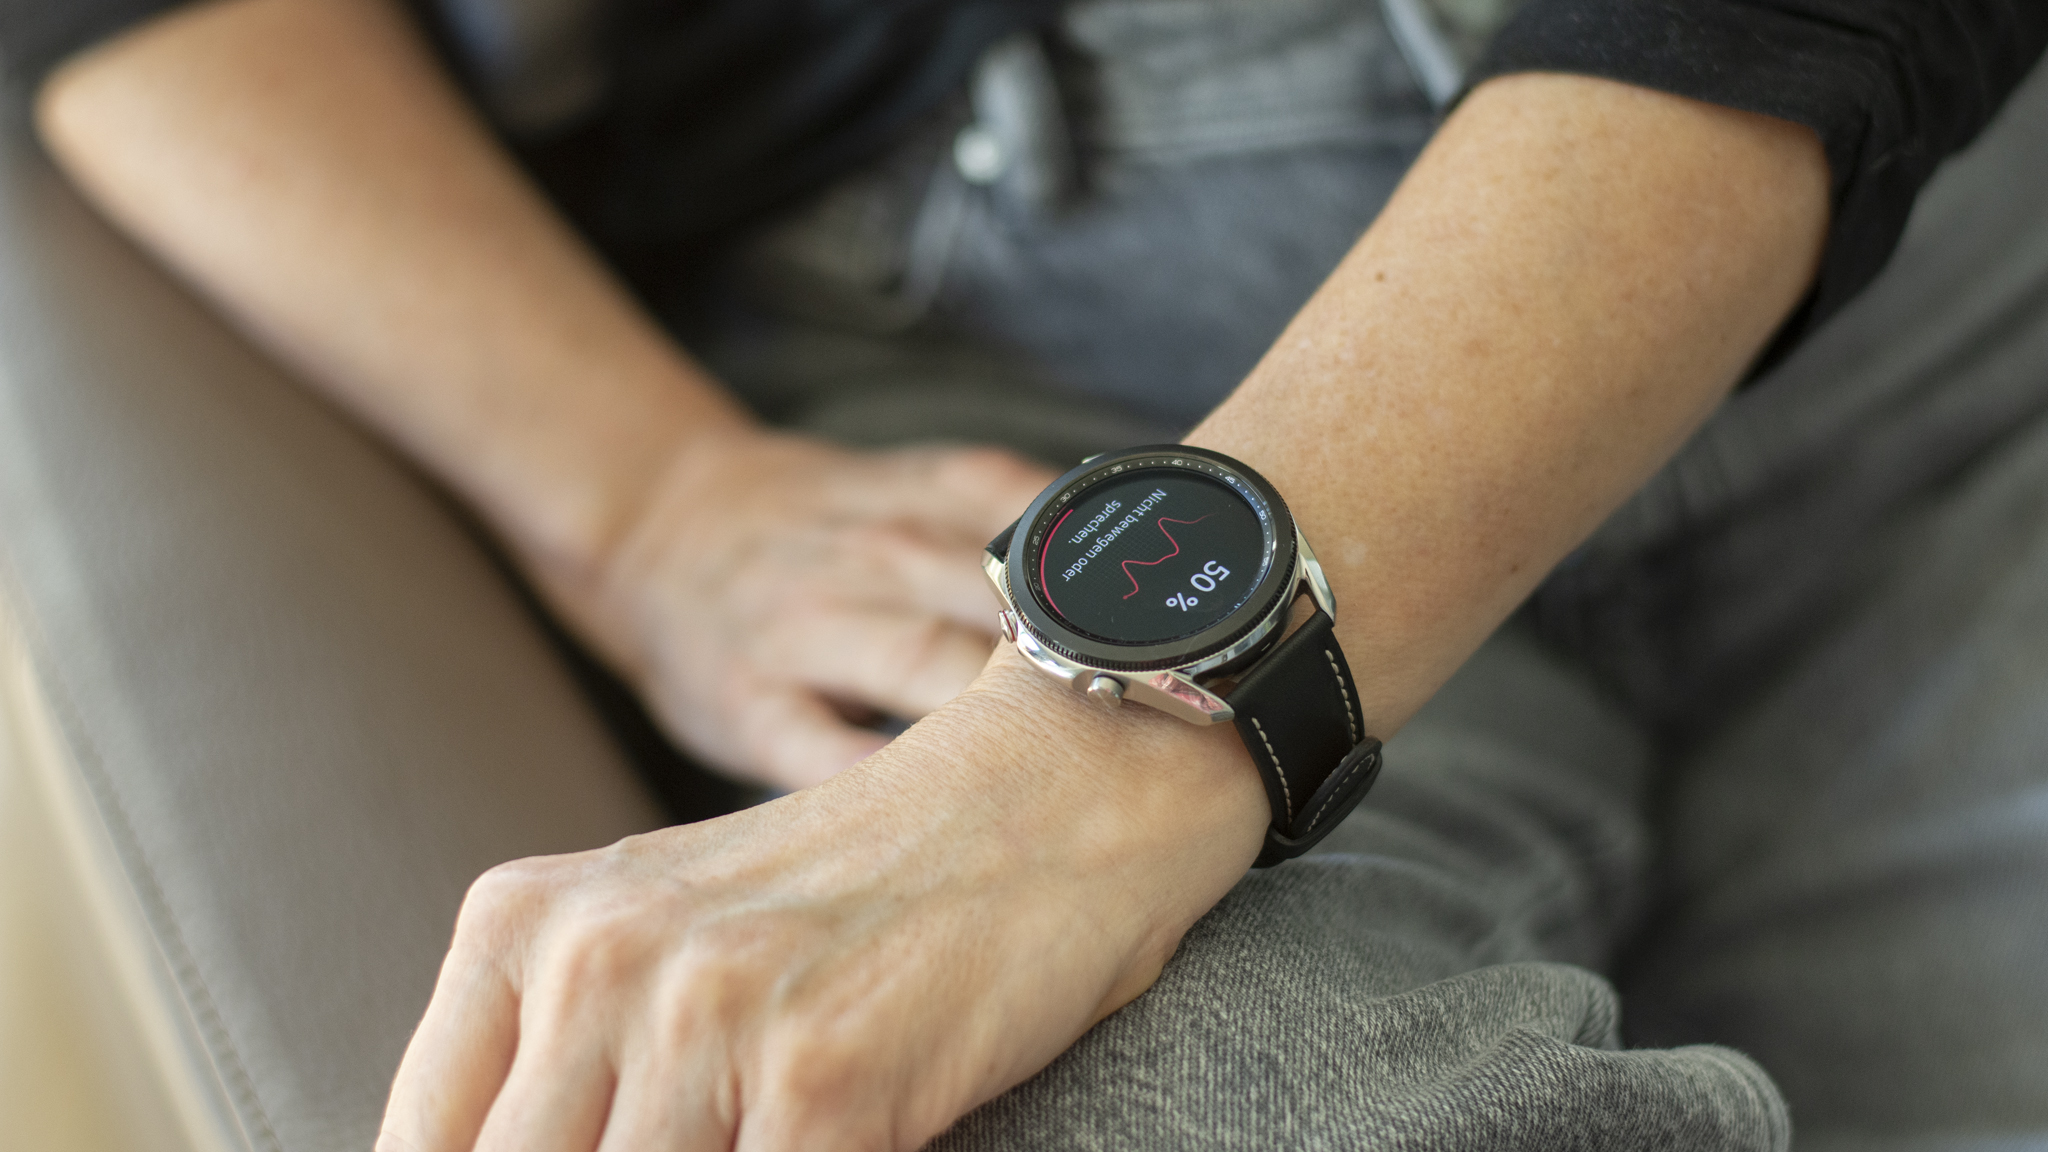 Galaxy Watch 3 LTE: Test der Samsung-Smartwatch - COMPUTER BILD